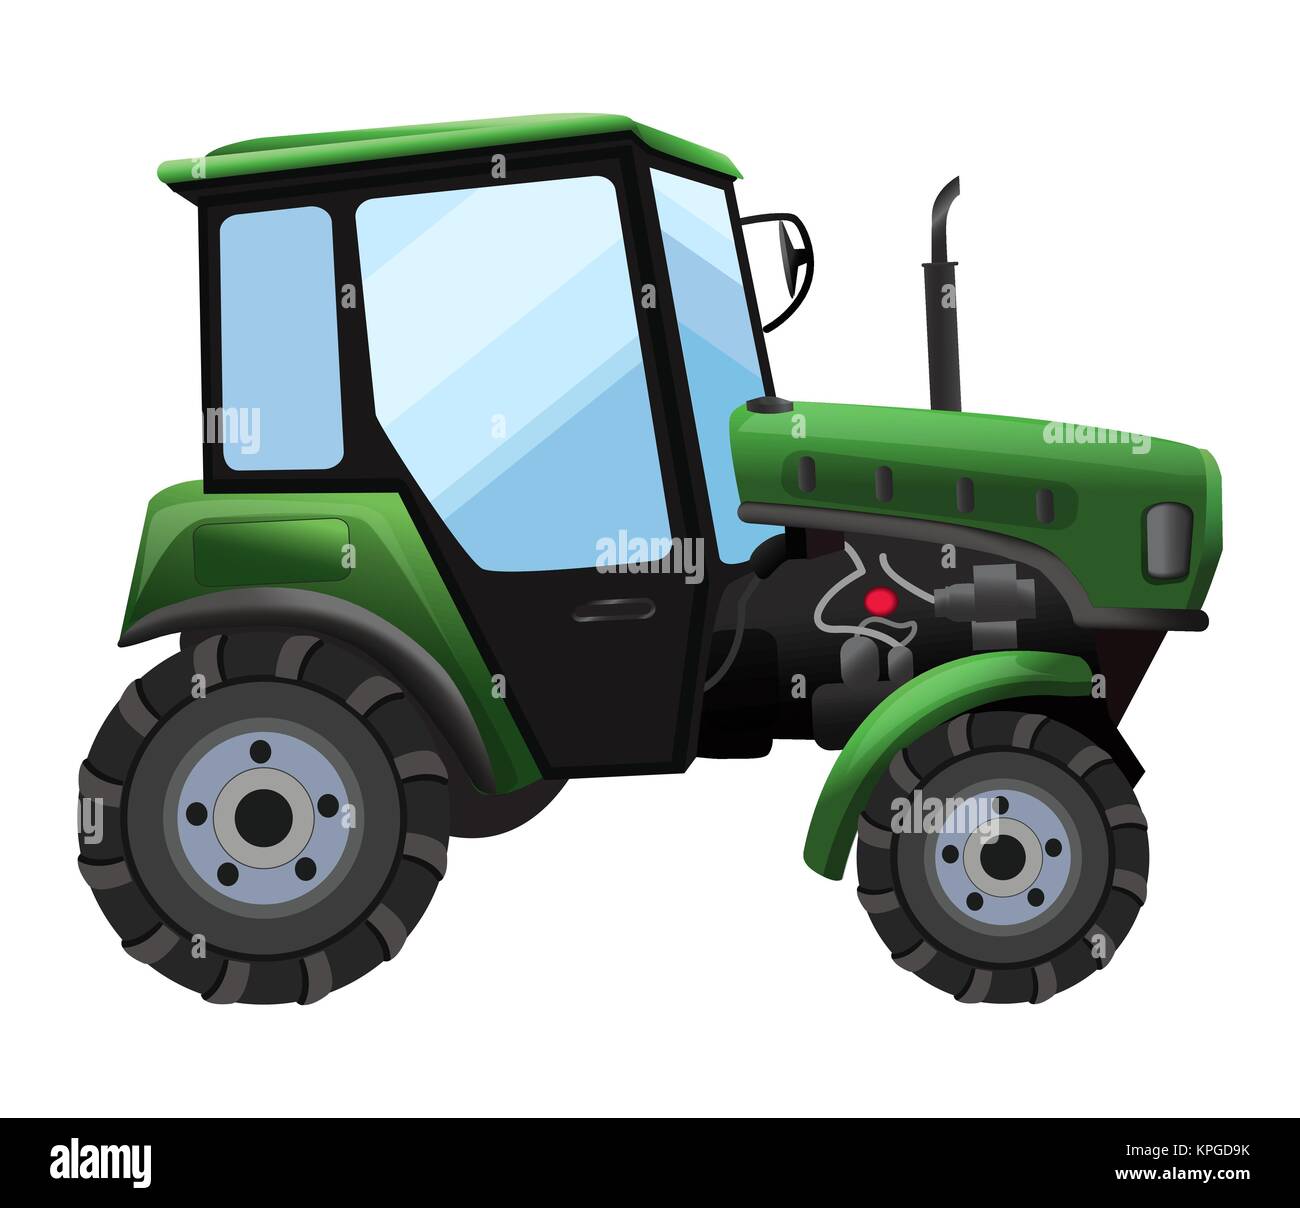 Le tracteur. Vector illustration de tracteur vert dans un style plat isolé sur fond blanc. De lourdes machines agricoles pour le travail sur le terrain Illustration de Vecteur